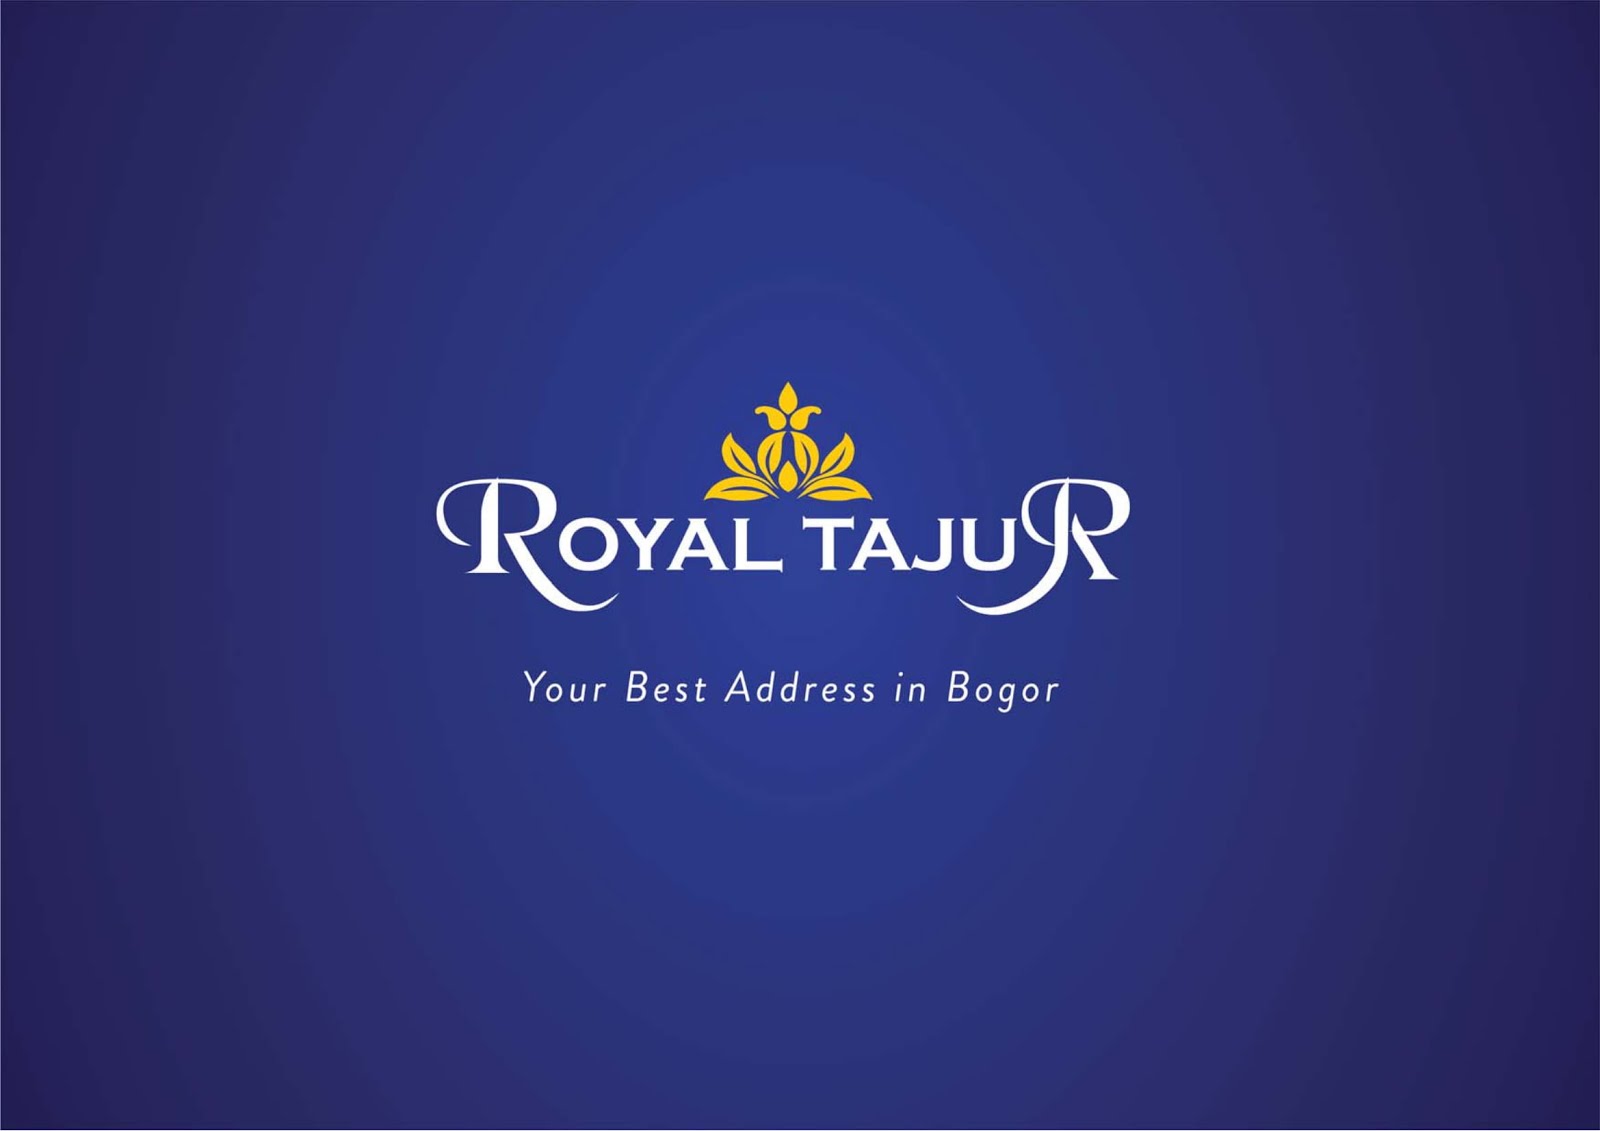 Royal Tajur